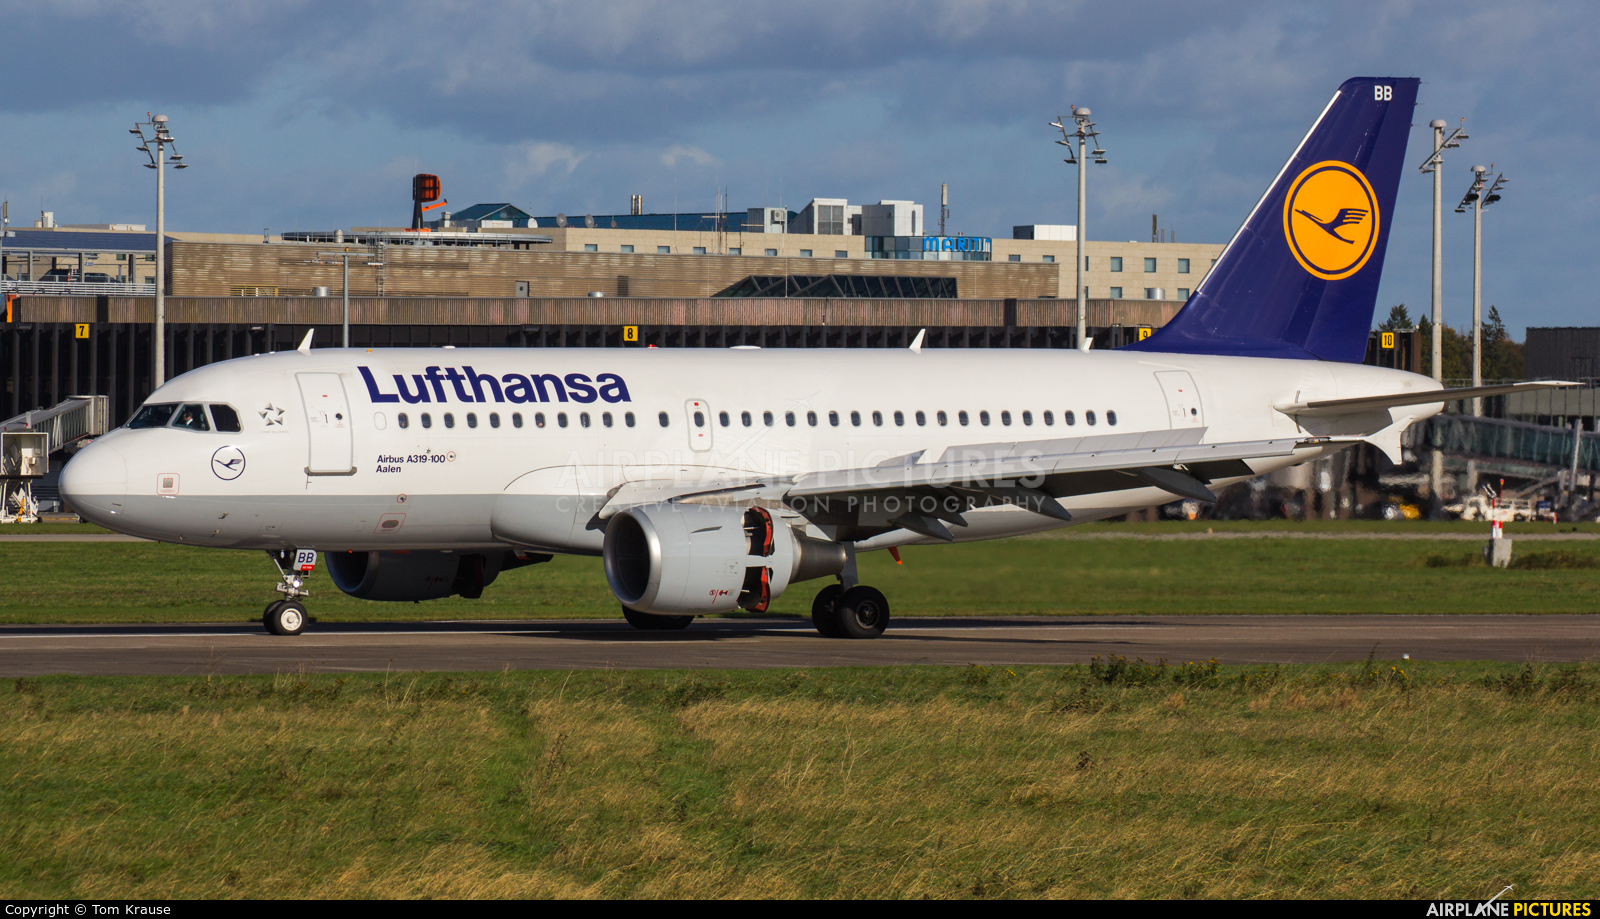 Lufthansa D-AIBB aircraft at Hannover - Langenhagen